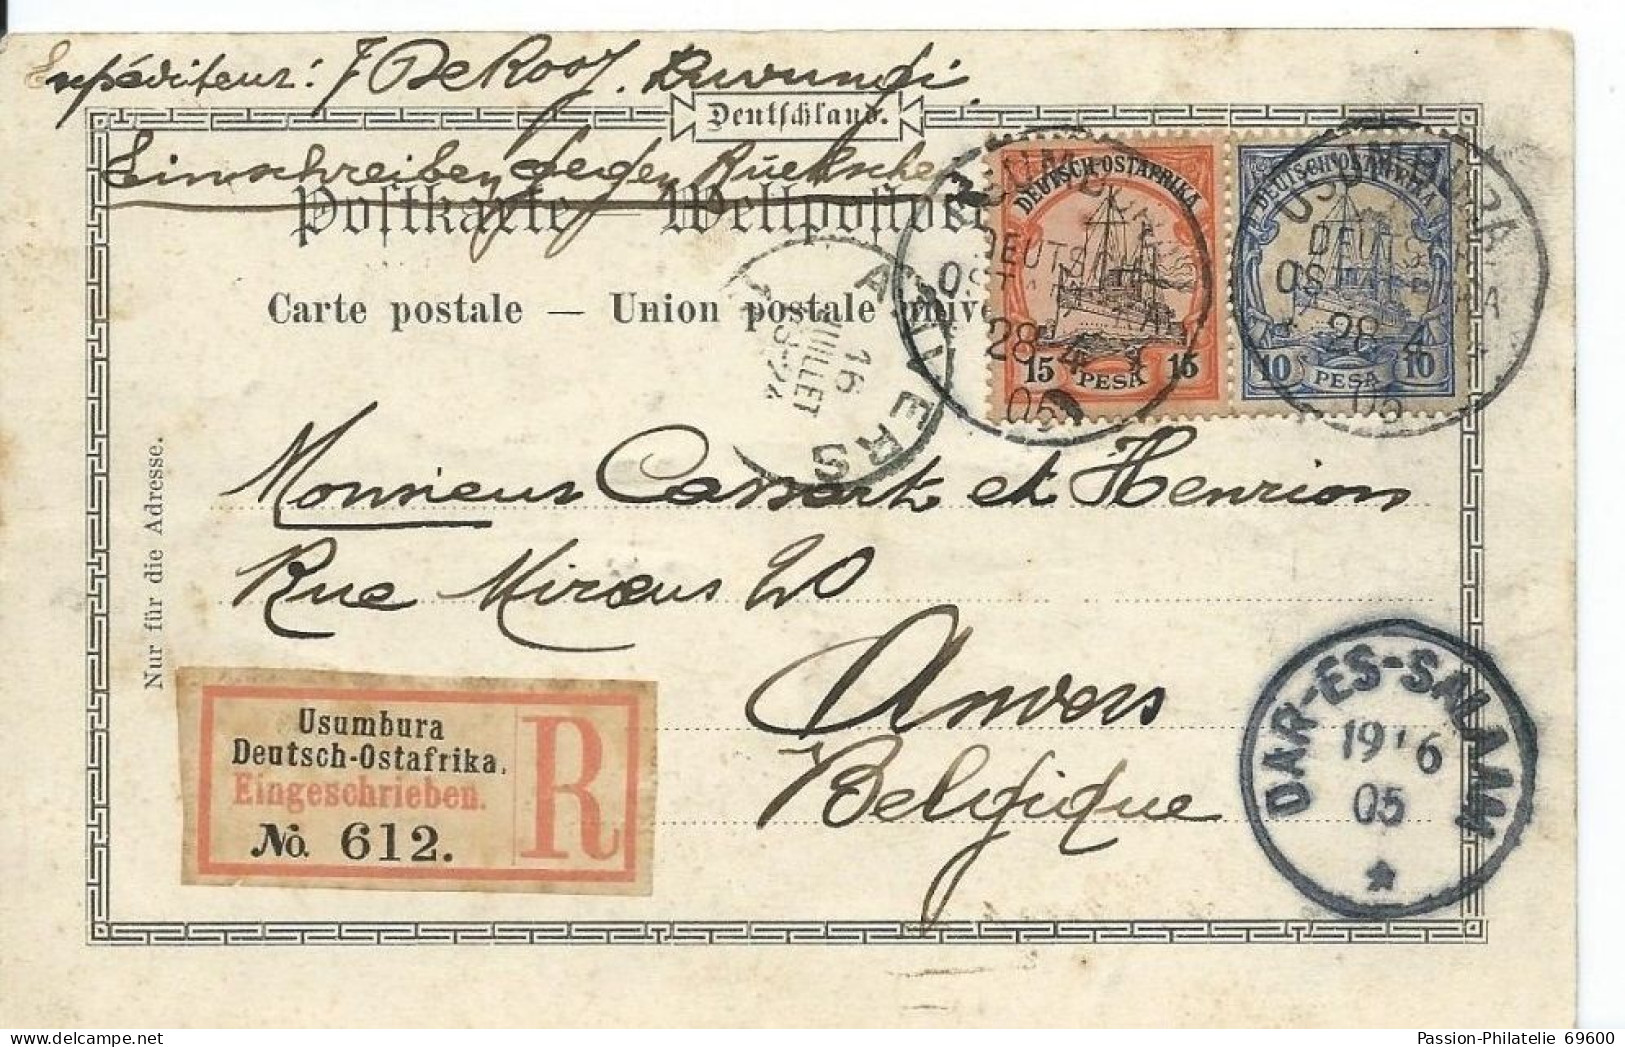 Militar Station Tabora Neue Boma - Circulé 1905 + Timbre Deutsch Ostafrika + Recommandé / Stamp Usumbura - Tanzania